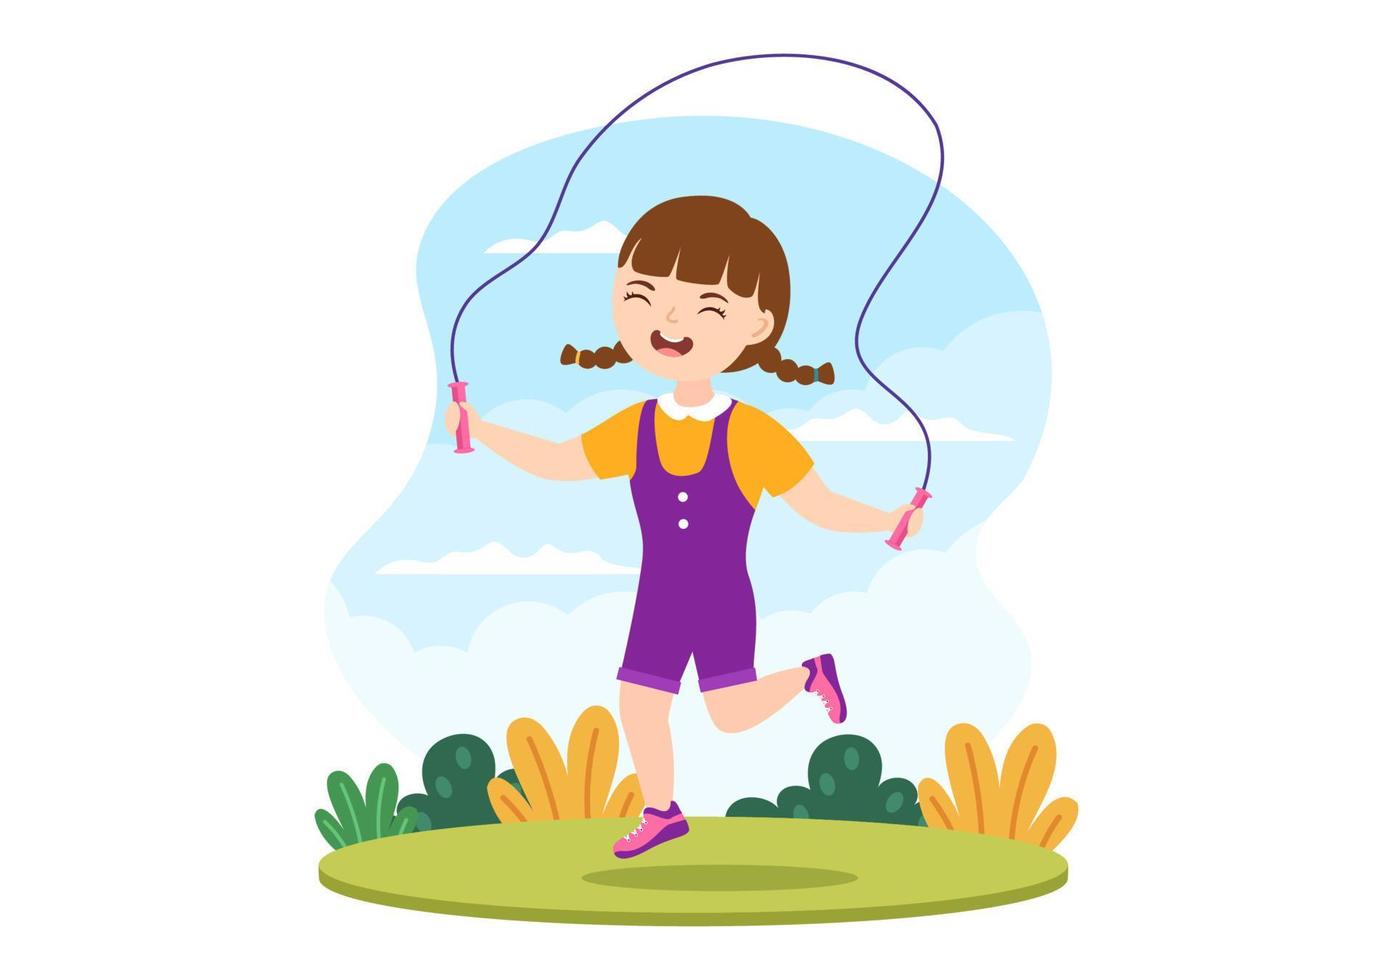 illustration de corde à sauter avec des enfants jouant à sauter des vêtements de sport dans des activités sportives de remise en forme à l'intérieur des modèles dessinés à la main de dessin animé plat vecteur